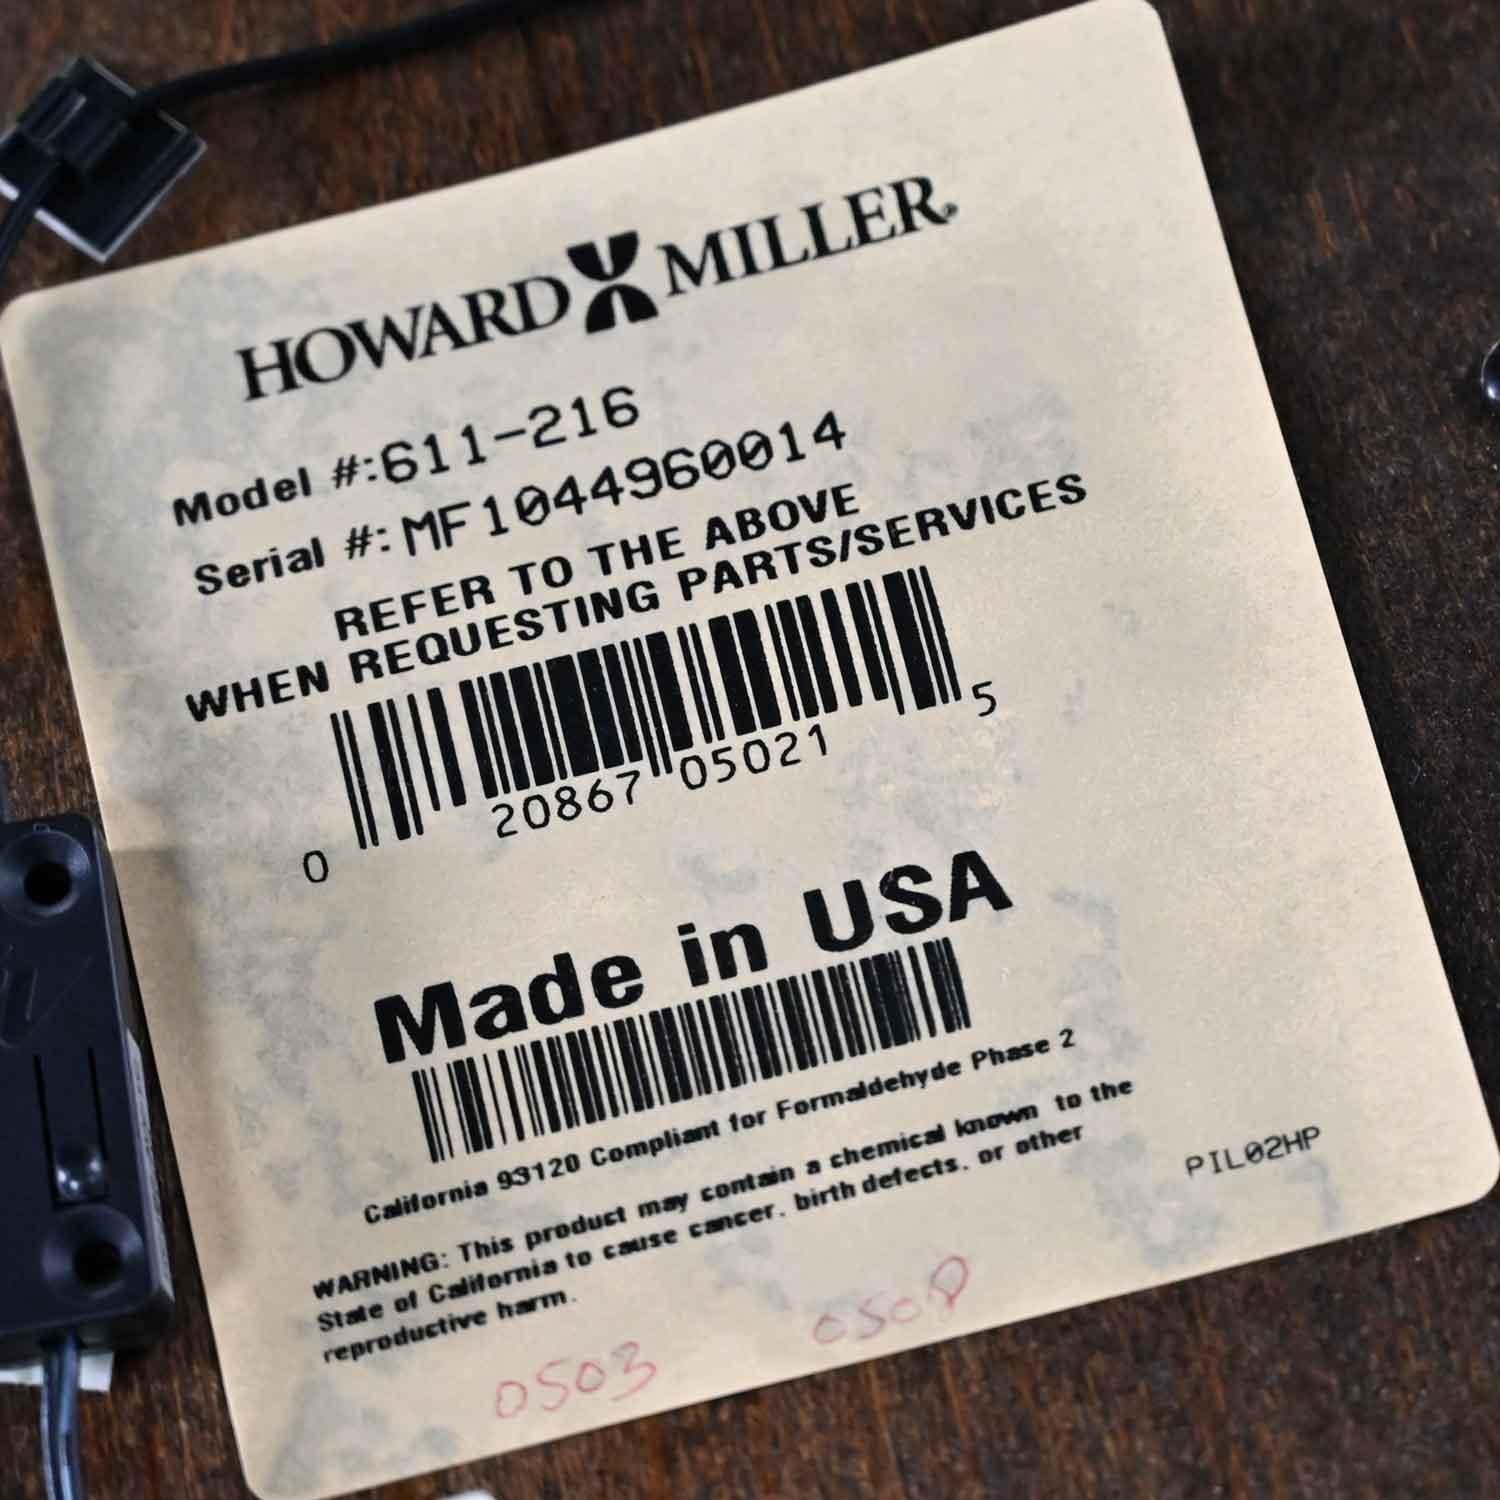 Howard Miller Quinten Modell 611-216 Chrom & Espresso Stand-Standuhr 11